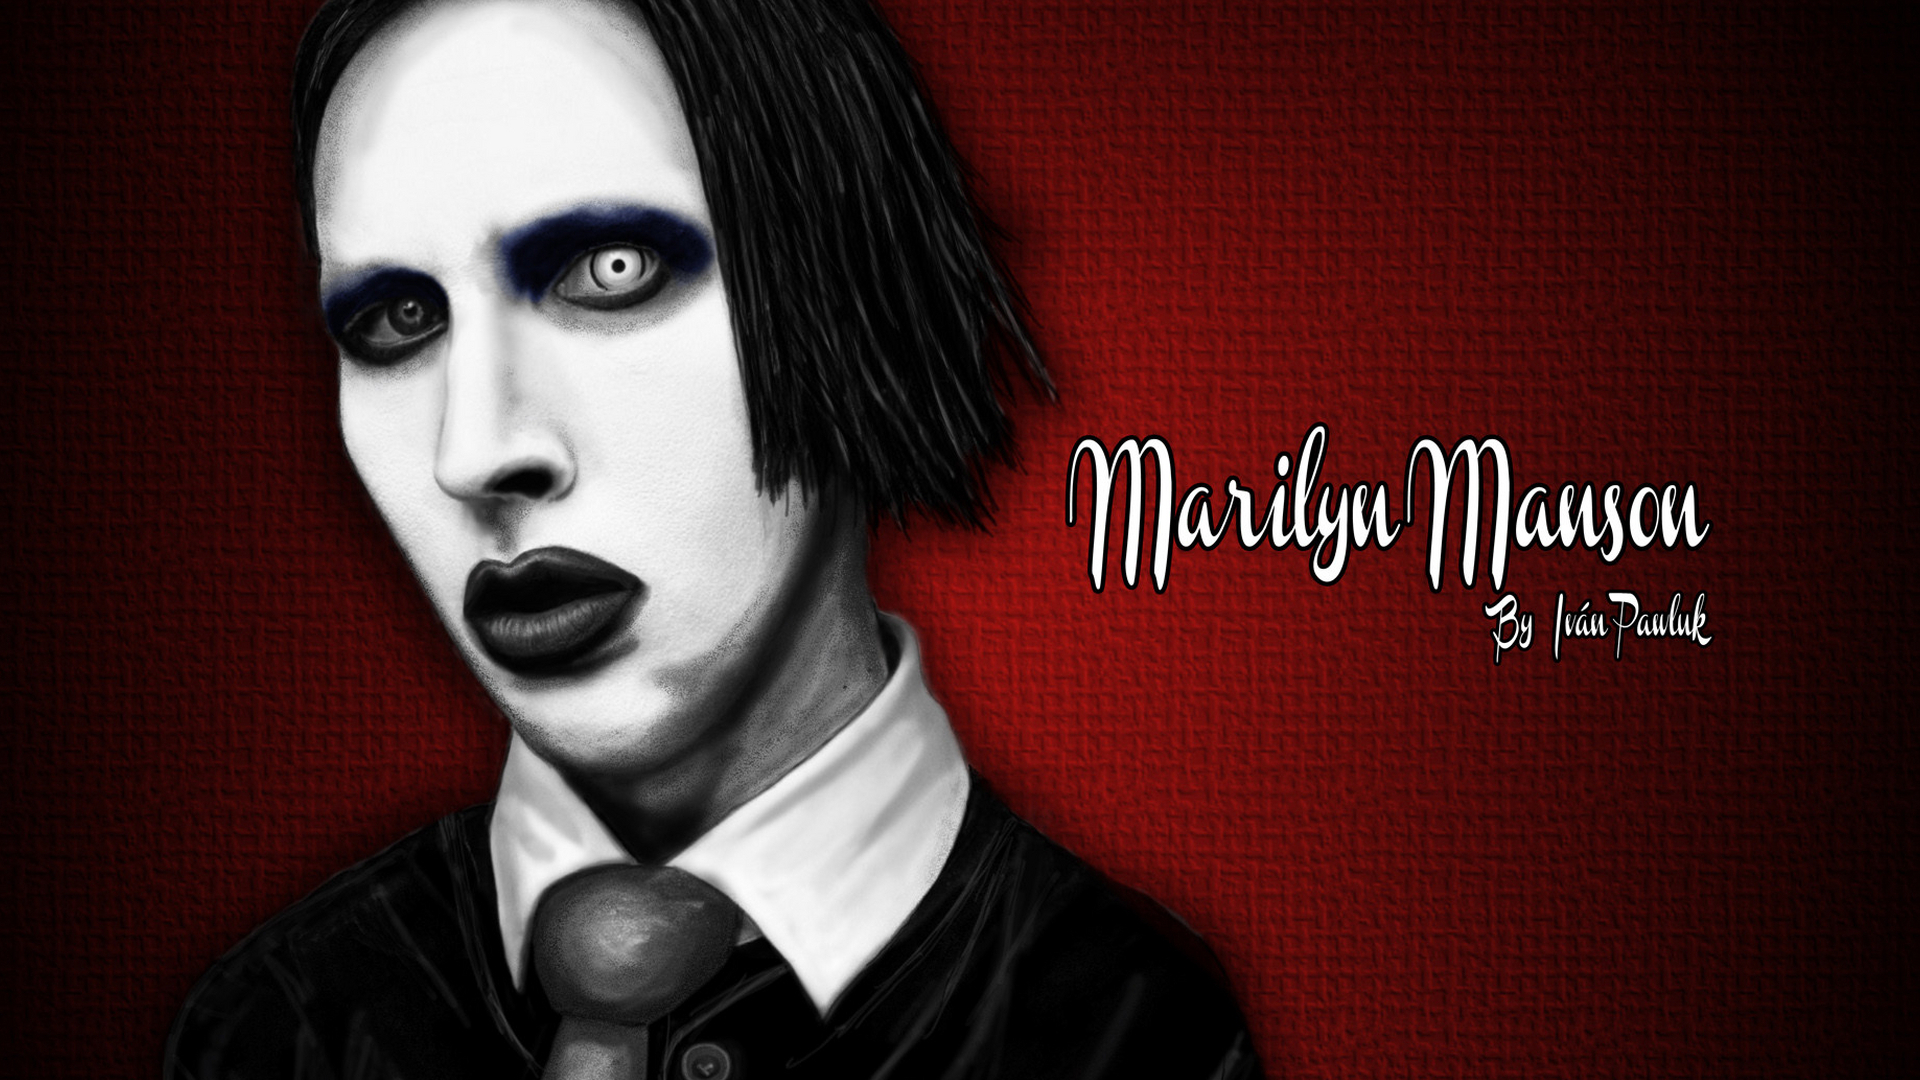 Heavy Metal Industrial Metal Marilyn Manson 1920x1080